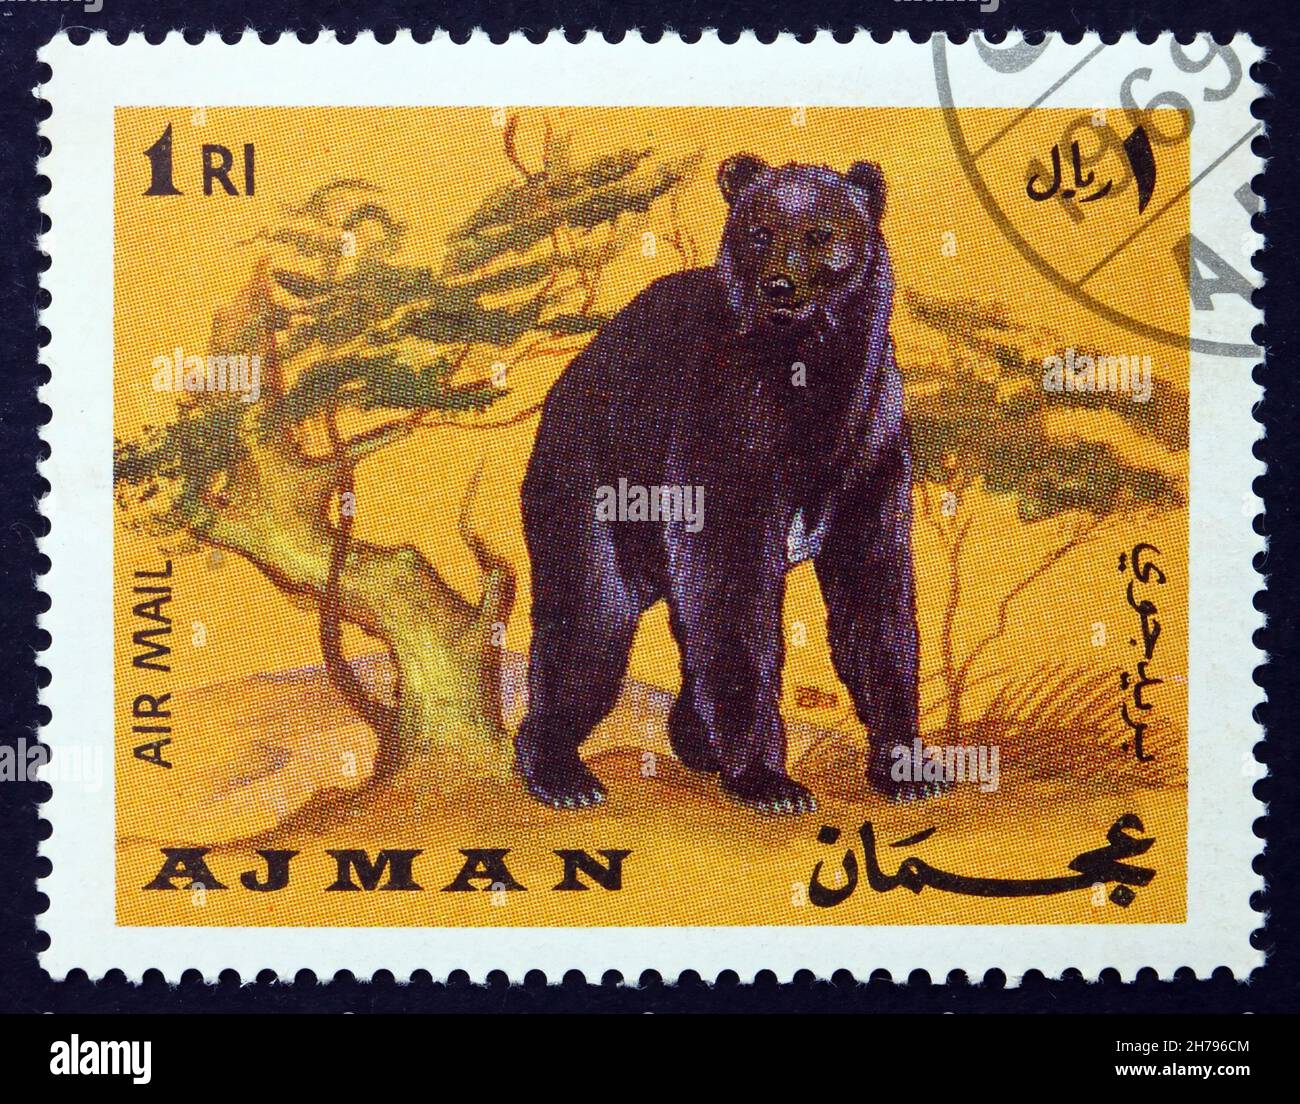 AJMAN - CIRCA 1969: a stamp printed in the Ajman shows Brown Bear, Ursus Arctos, Animal, circa 1969 Stock Photo